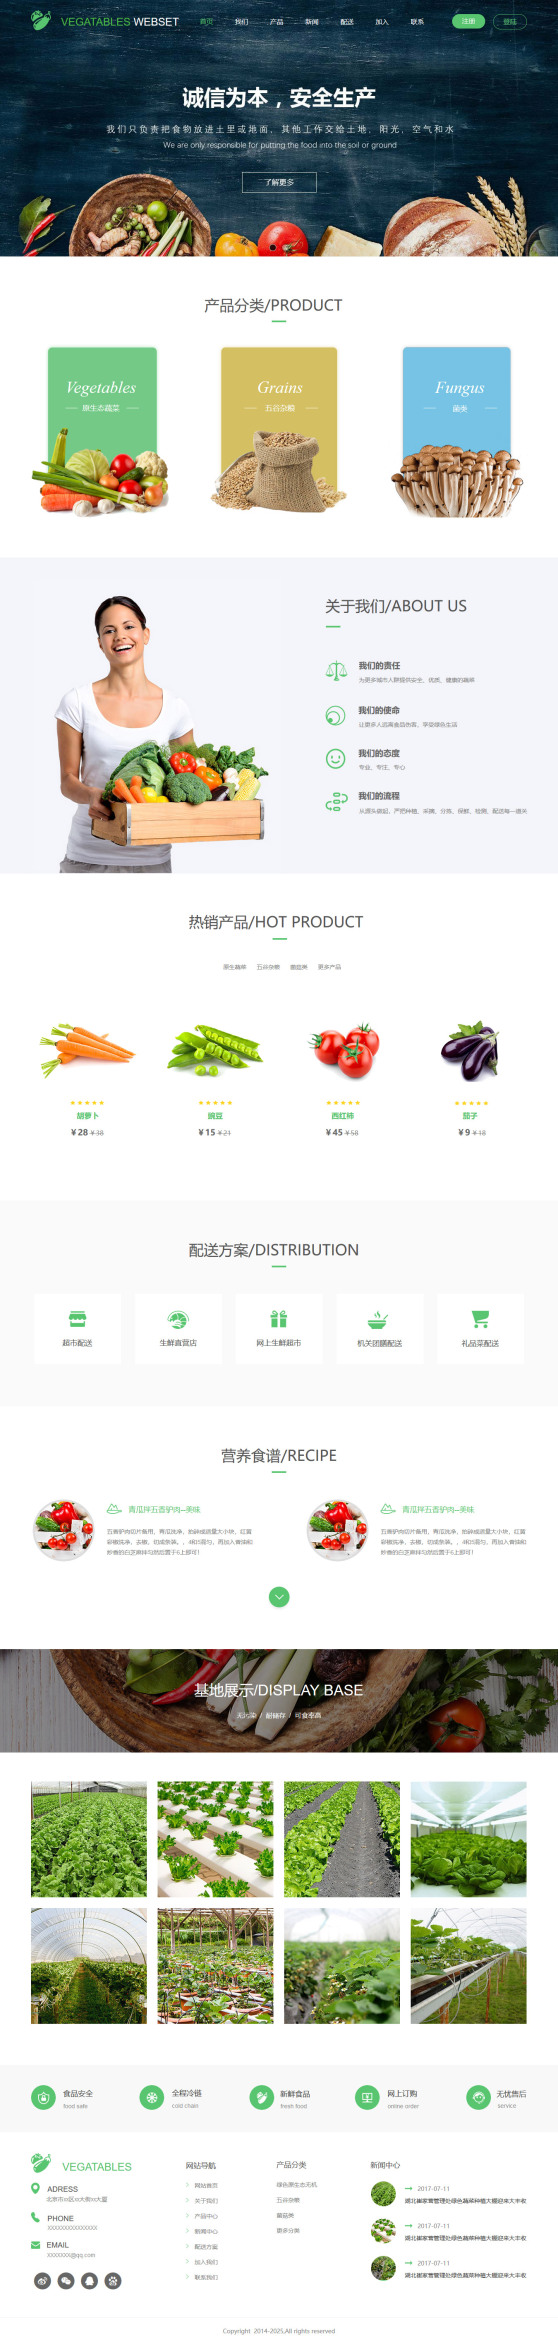 定制蔬菜水果基地公司网页模板